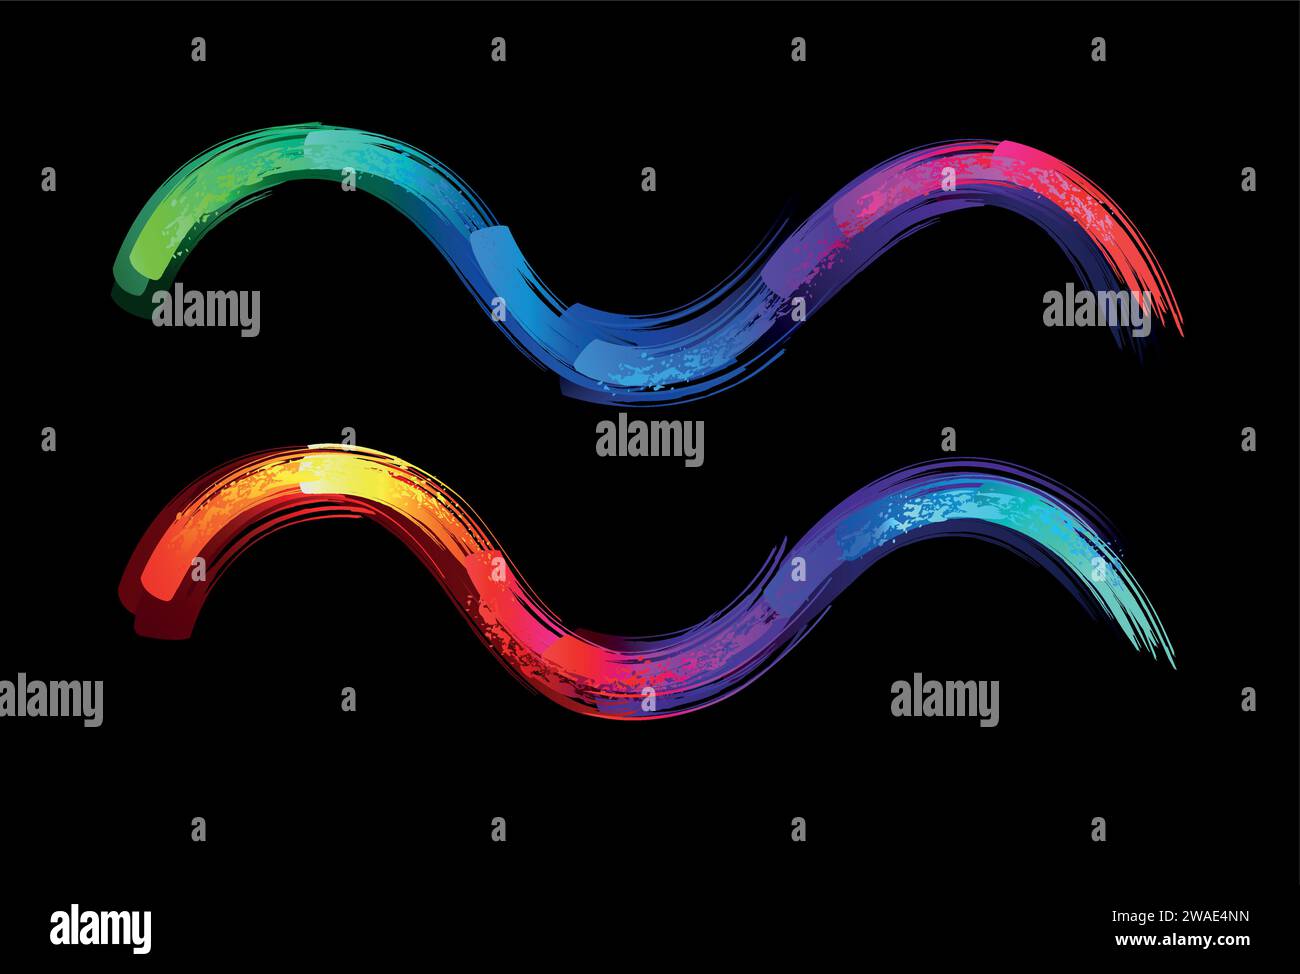 Aquarius-Sternzeichen, gemalt mit großen Regenbogenstrichen, hell, mehrfarbig, leuchtend, Neonfarbe auf schwarzem Hintergrund. Zodiac-Symbol. Stock Vektor